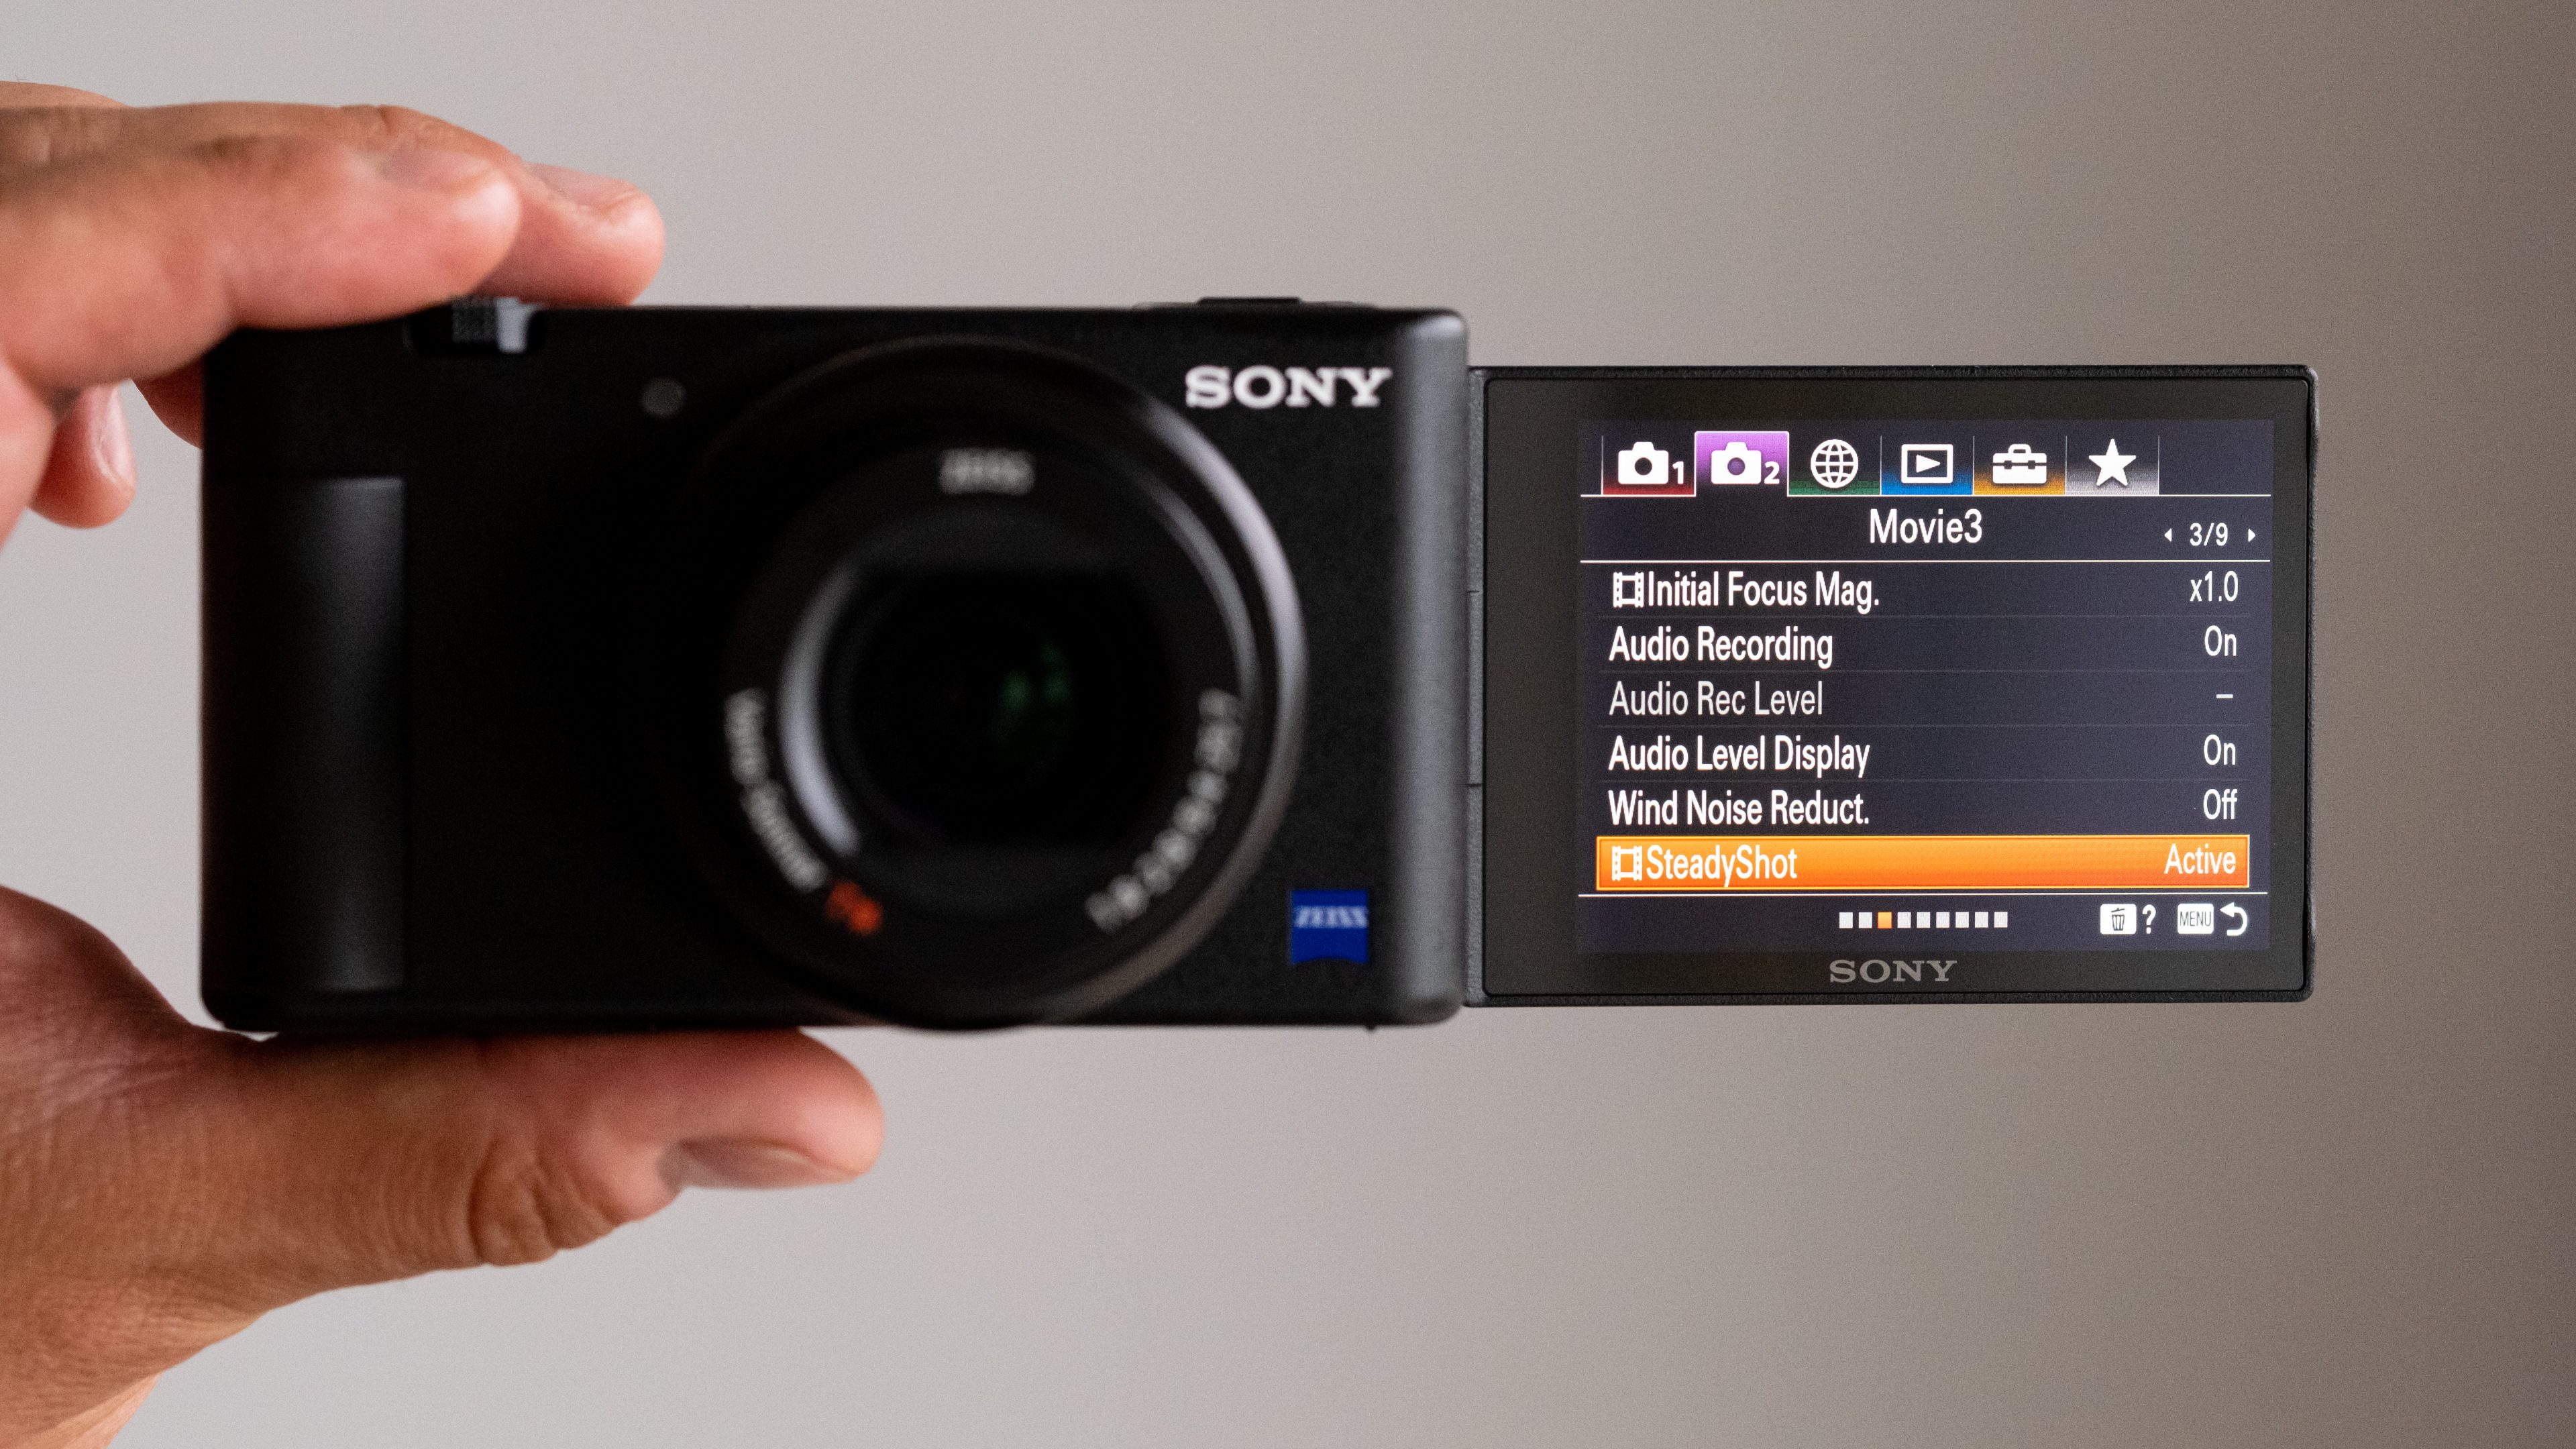 Sony ZV-1 ra mắt thị trường Việt, máy ảnh dành cho người sáng tạo nội dung, giá 19,990,000 VND